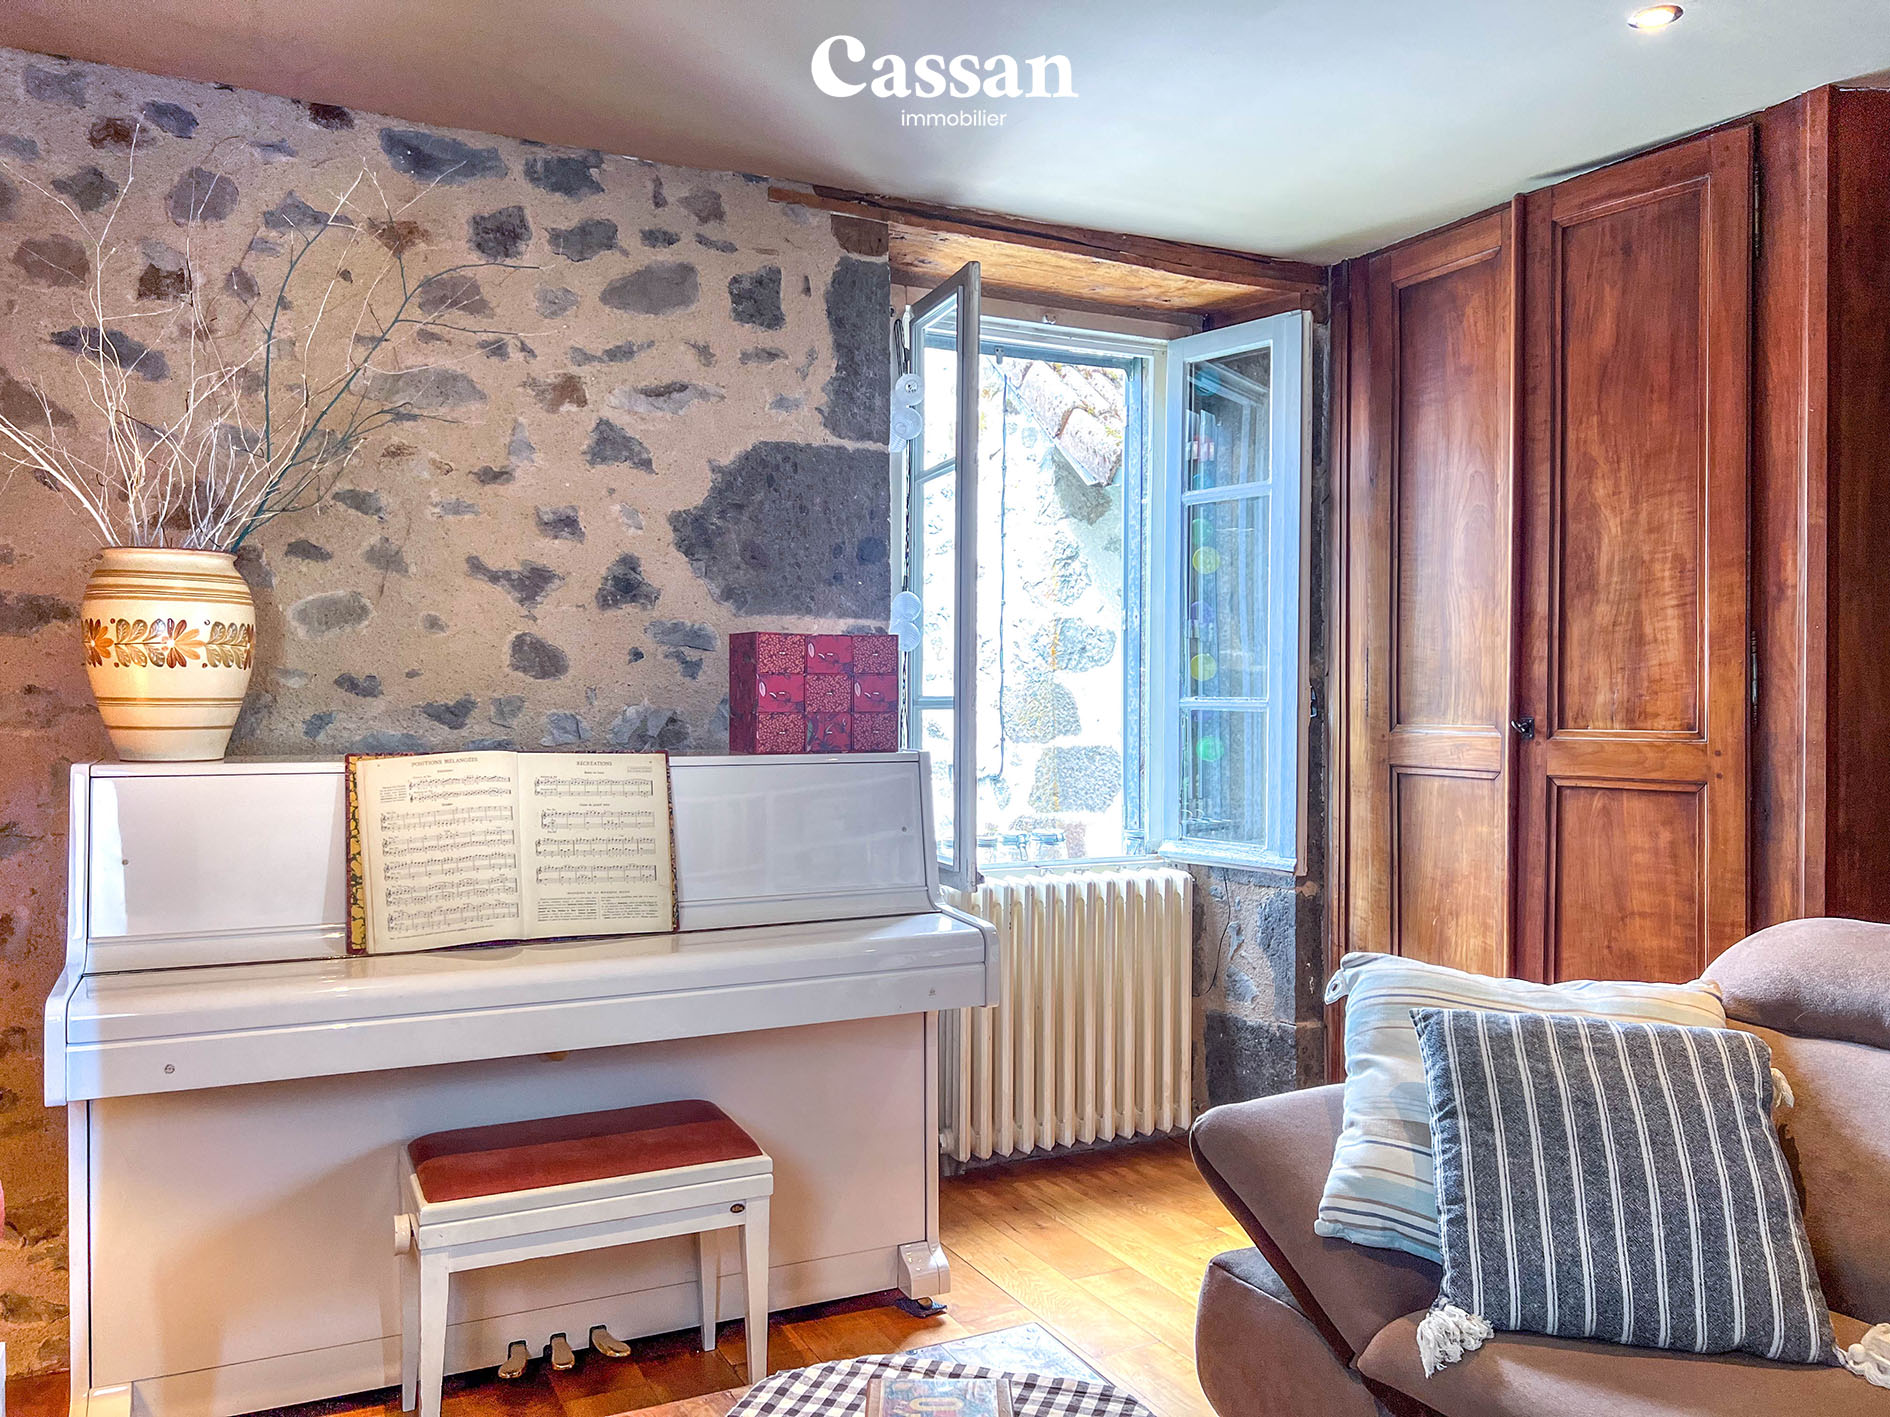 Salon maison à vendre Velzic Cassan immobilier